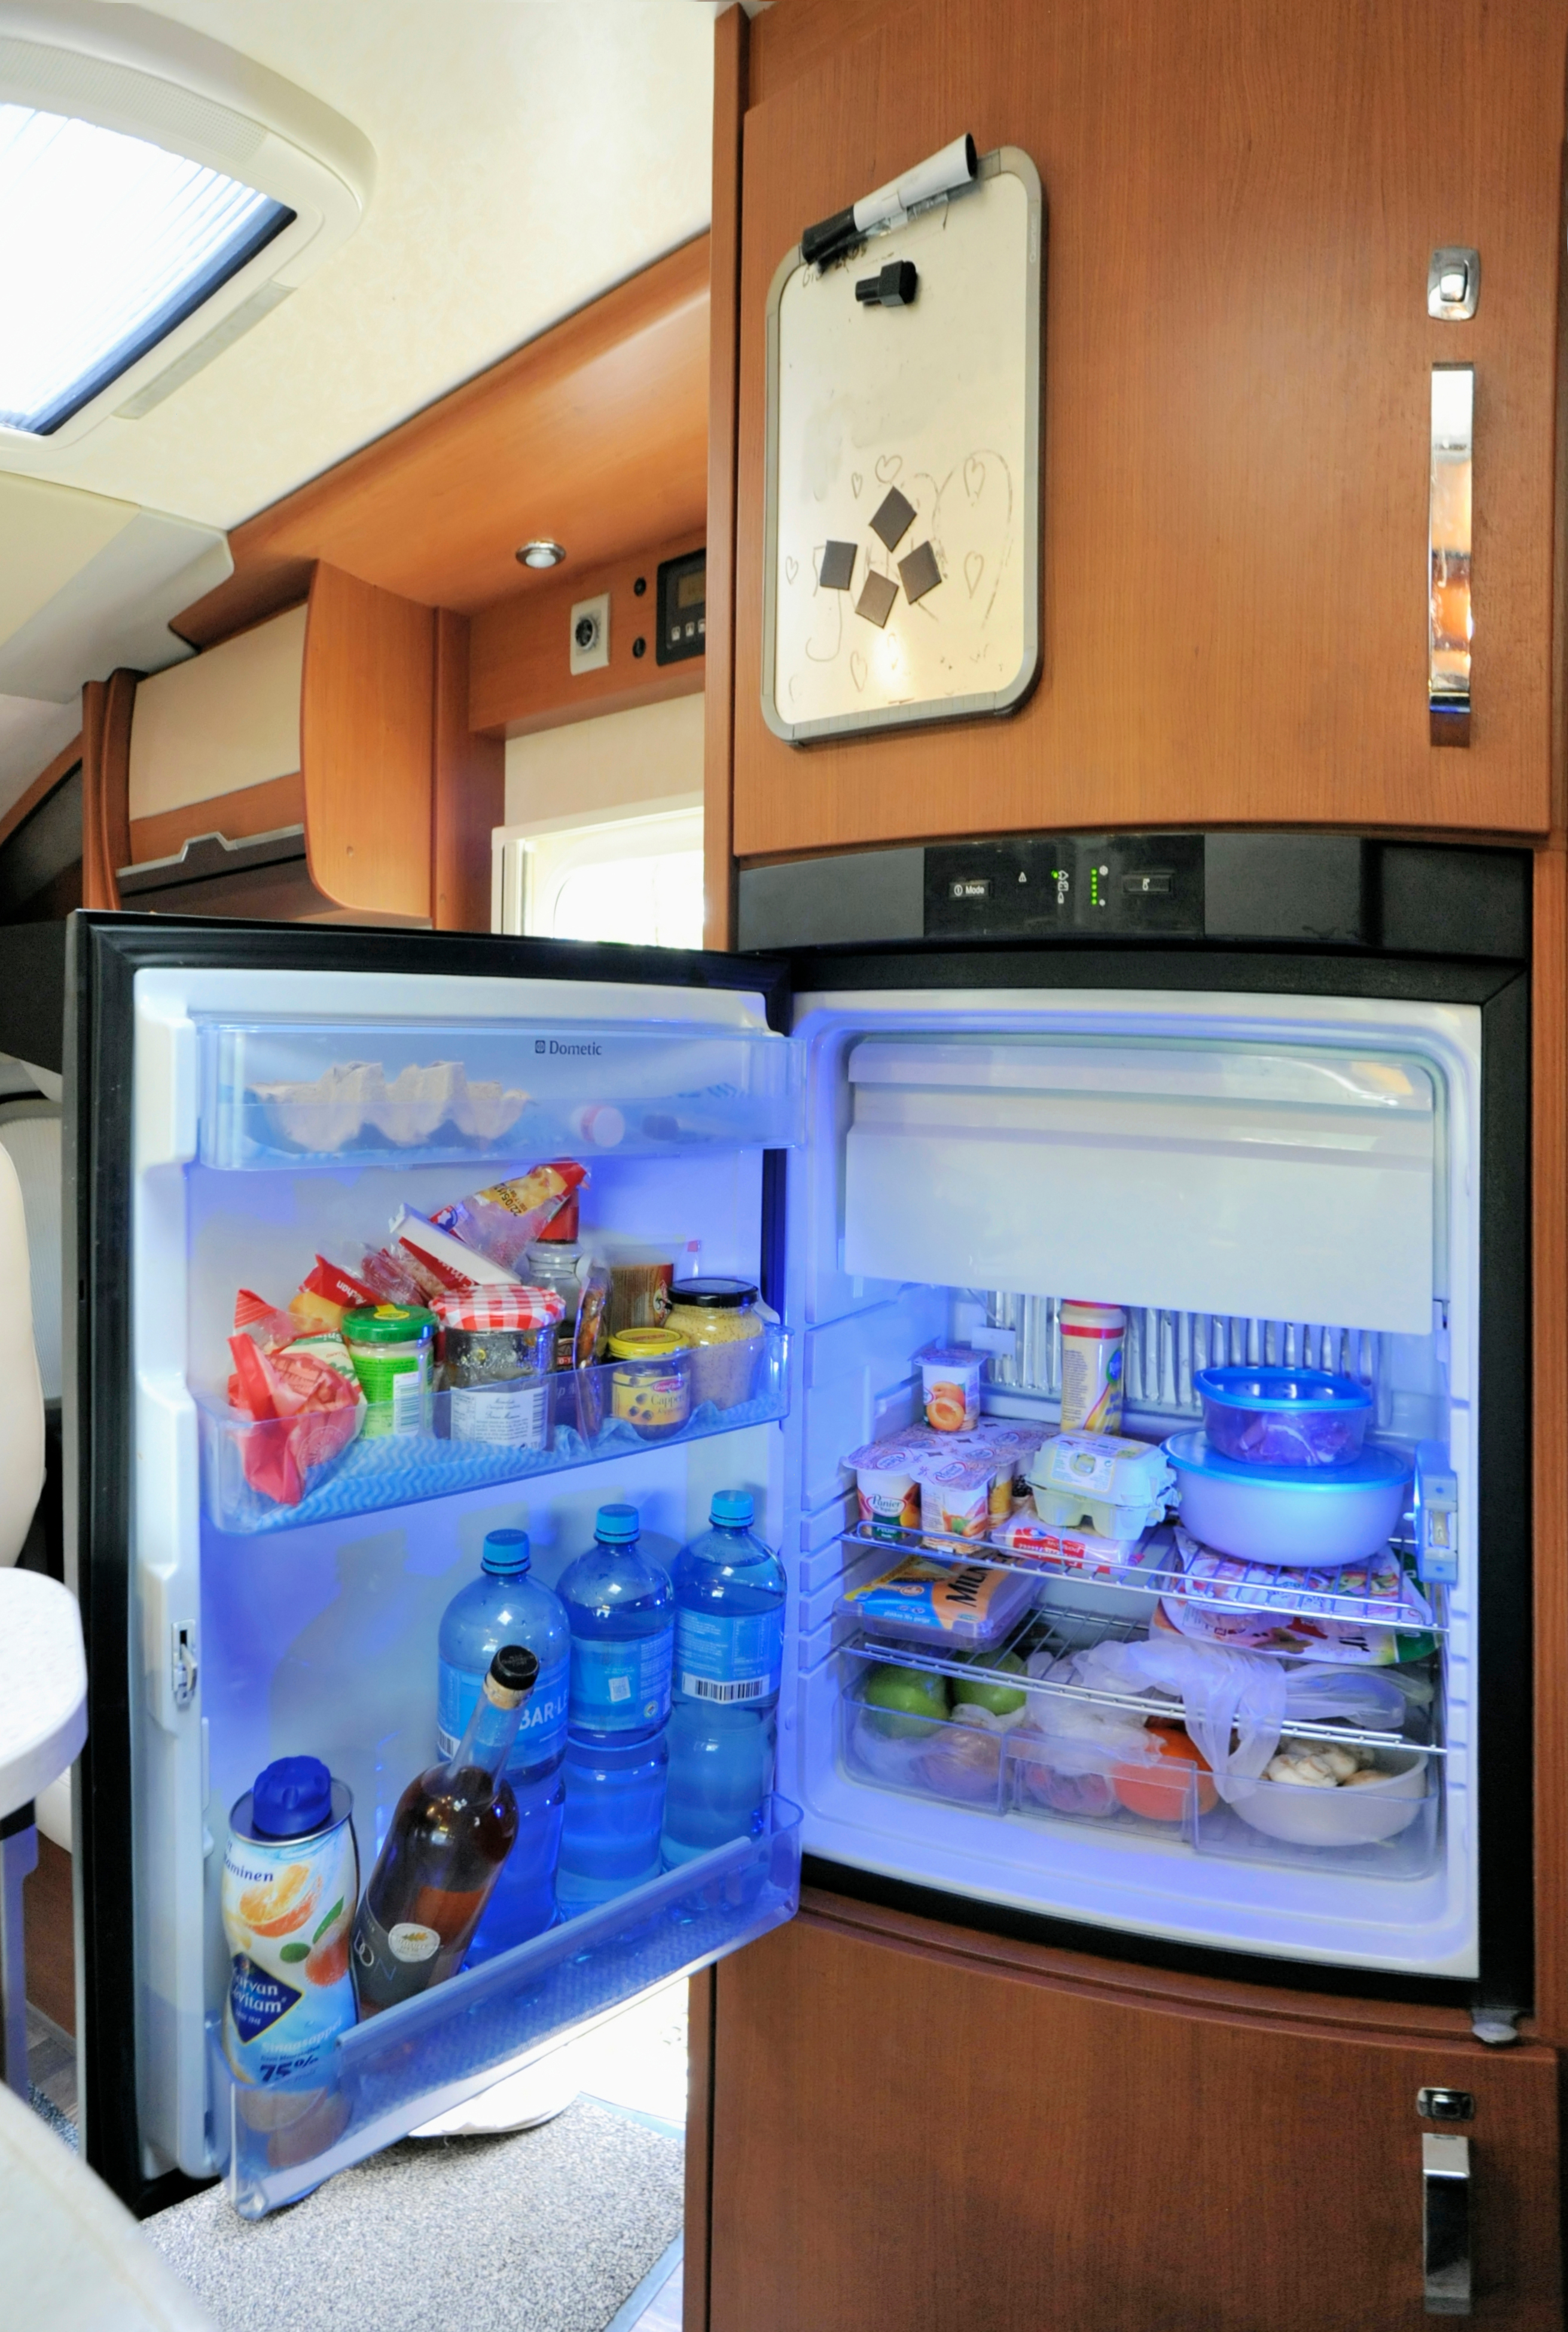 Open RV Refrigerator Full Of Food